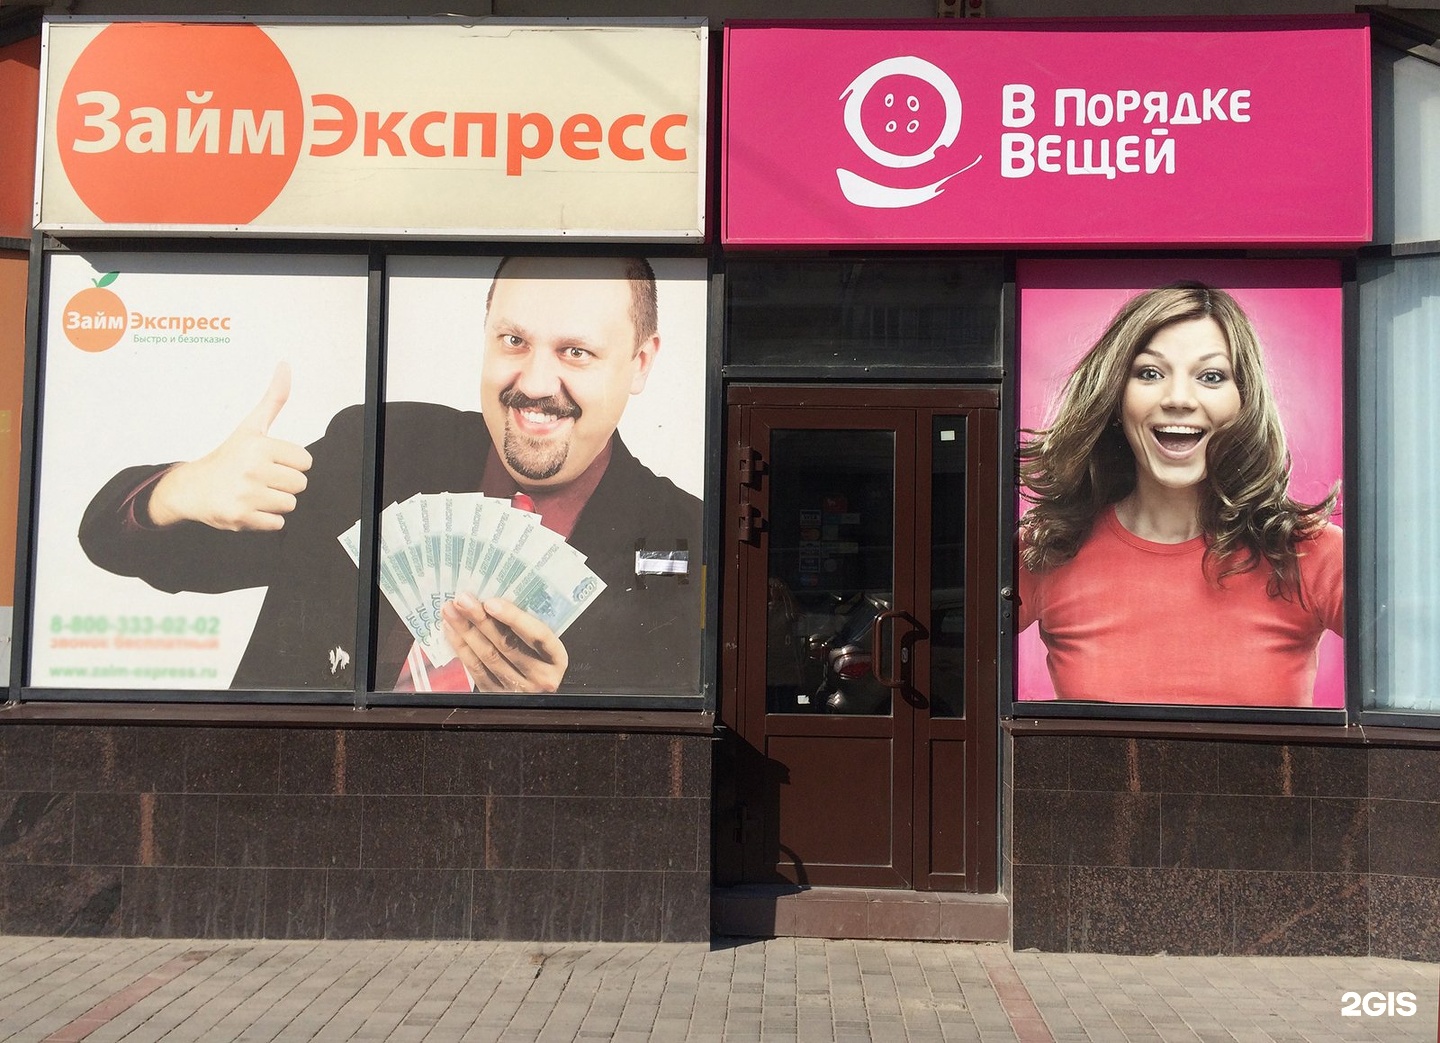 Займ экспресс Коломенская фото. Банк пойдем на Краснознаменской Волгоград. Экспресс займ реклама. 24 экспресс займ